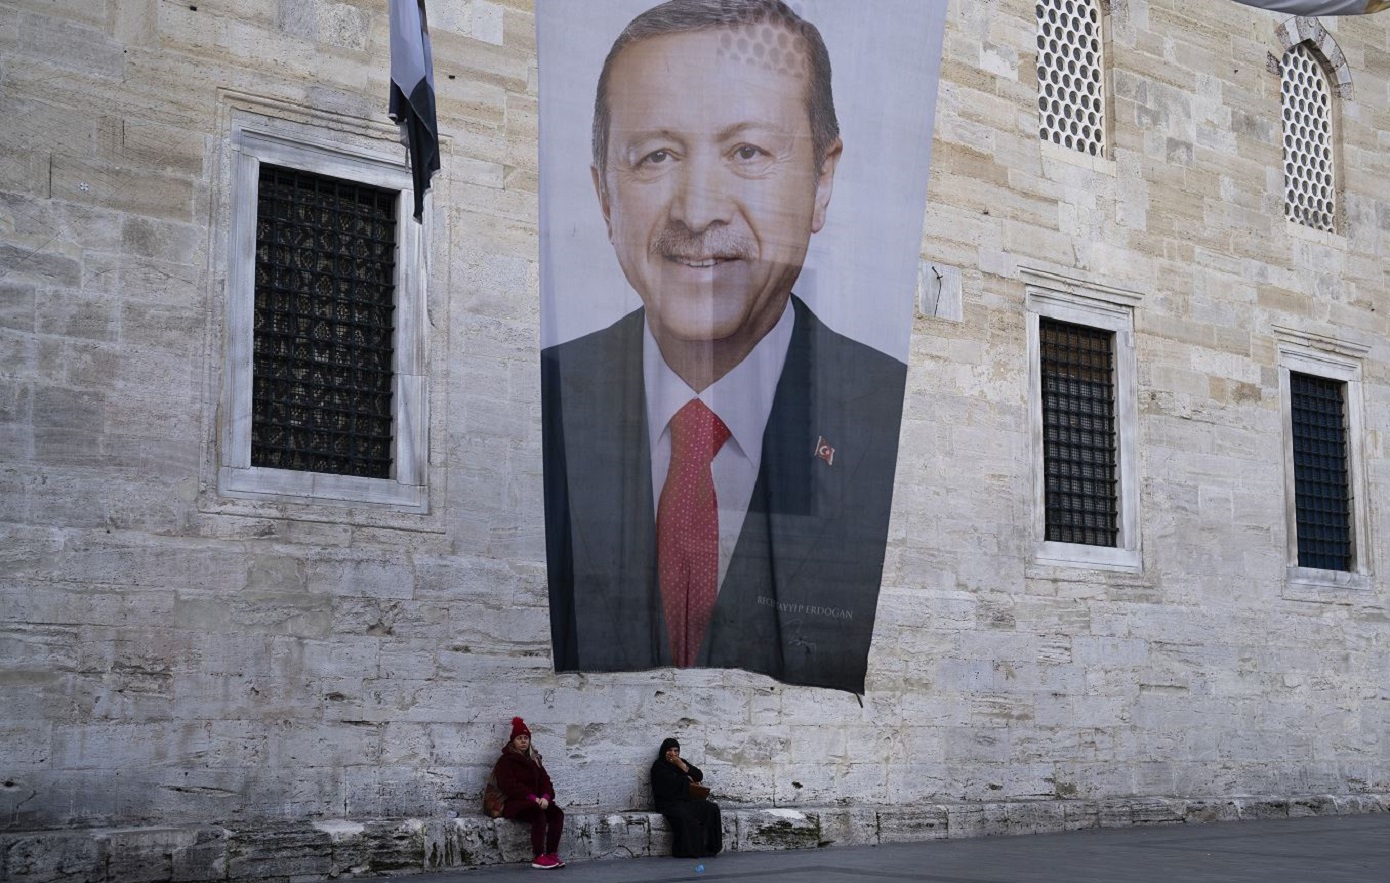 Αναστάτωση στο κόμμα του Ερντογάν μετά την ήττα στις εκλογές: Ακύρωσε νόμιμη εκλογή δημάρχου για να βάλει δικό του άτομο